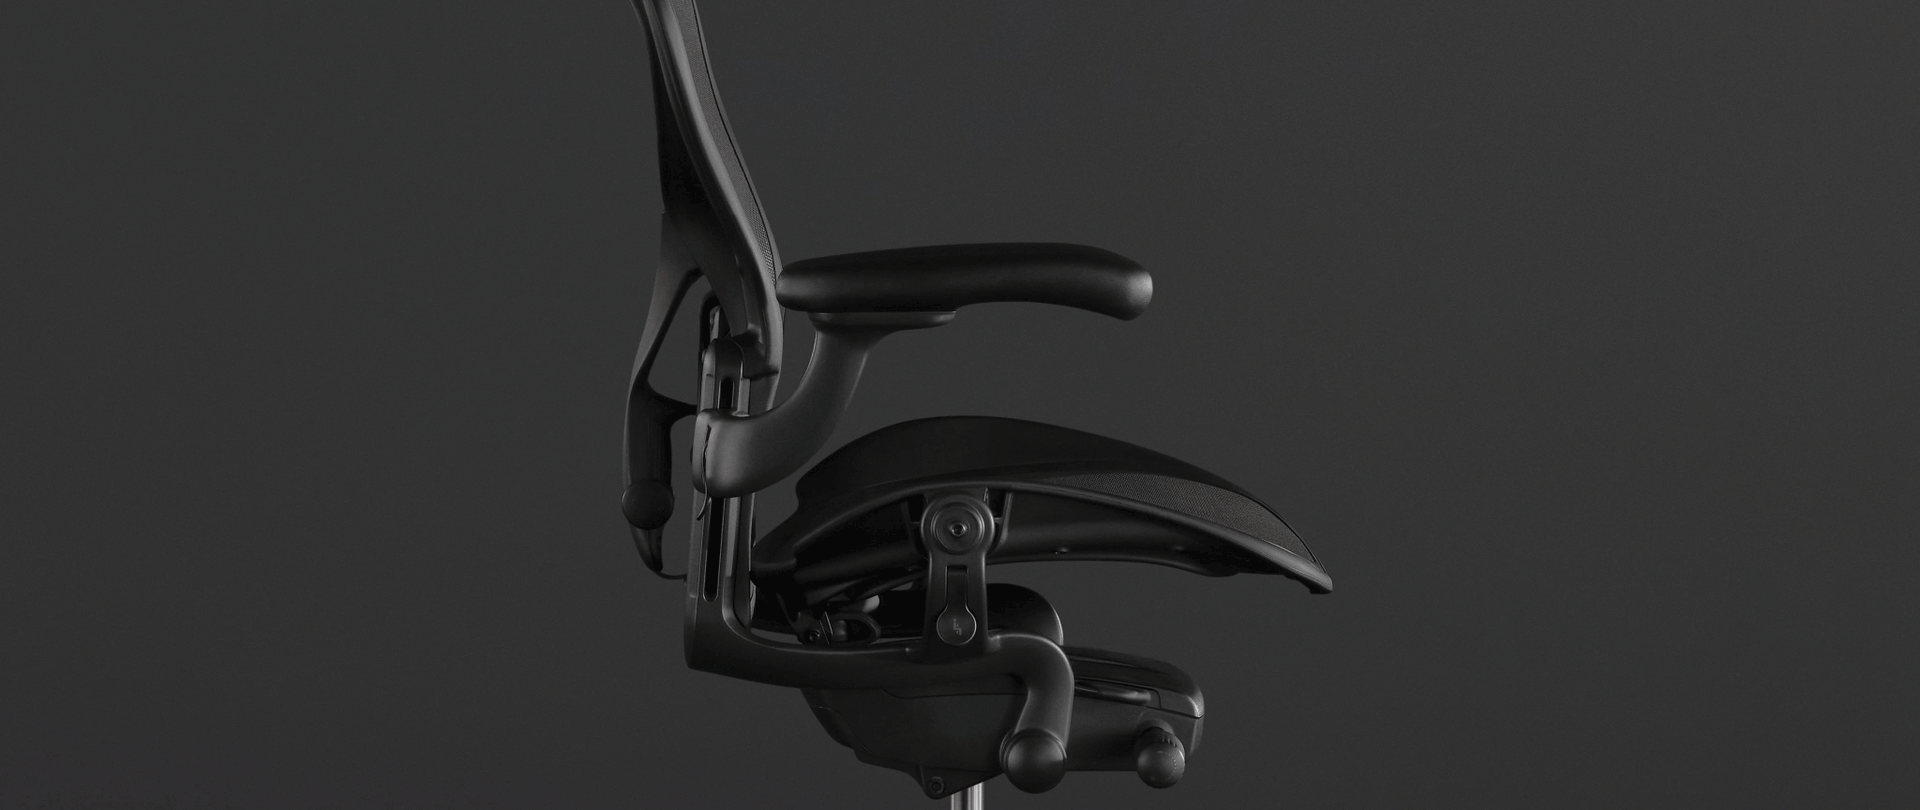 블랙 Aeron 체어 사진 위의 애니메이션은 이 체어의 PostureFit SL이 전체 척추를 어떻게 지지하는지 보여줍니다.